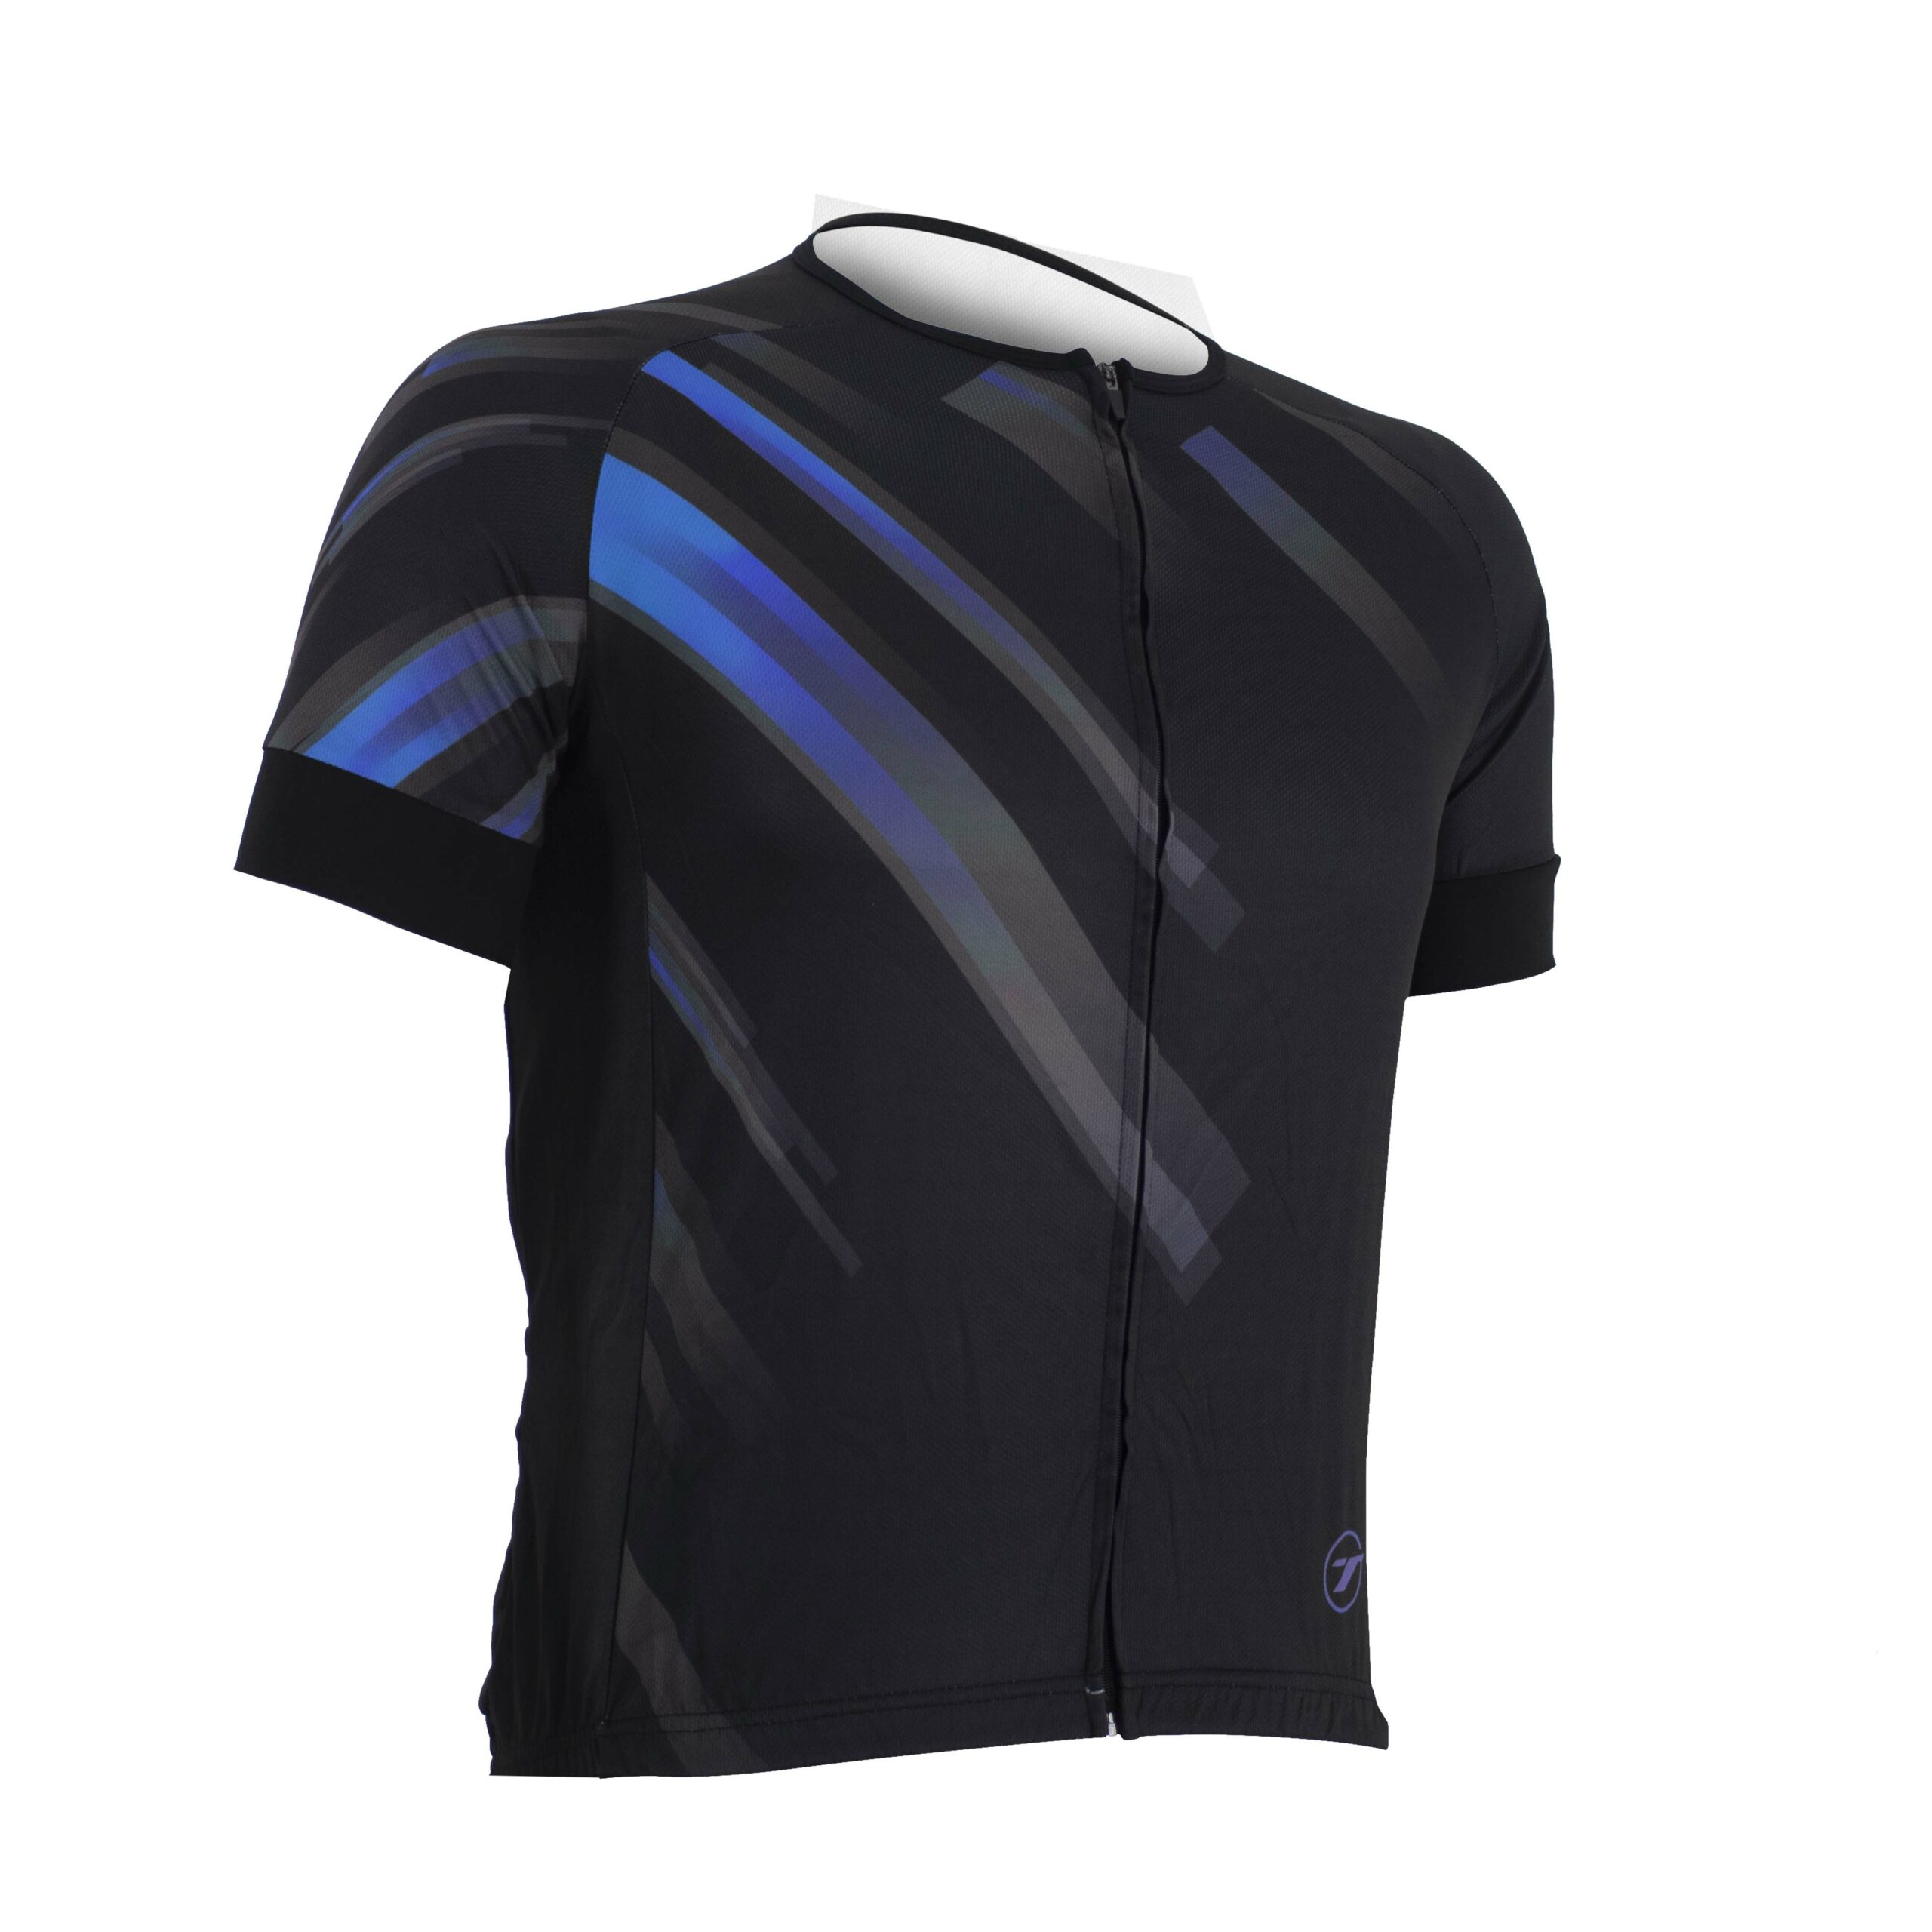 Camisa para ciclismo SUNNY | RIDE LINE - Preto/Azul, G